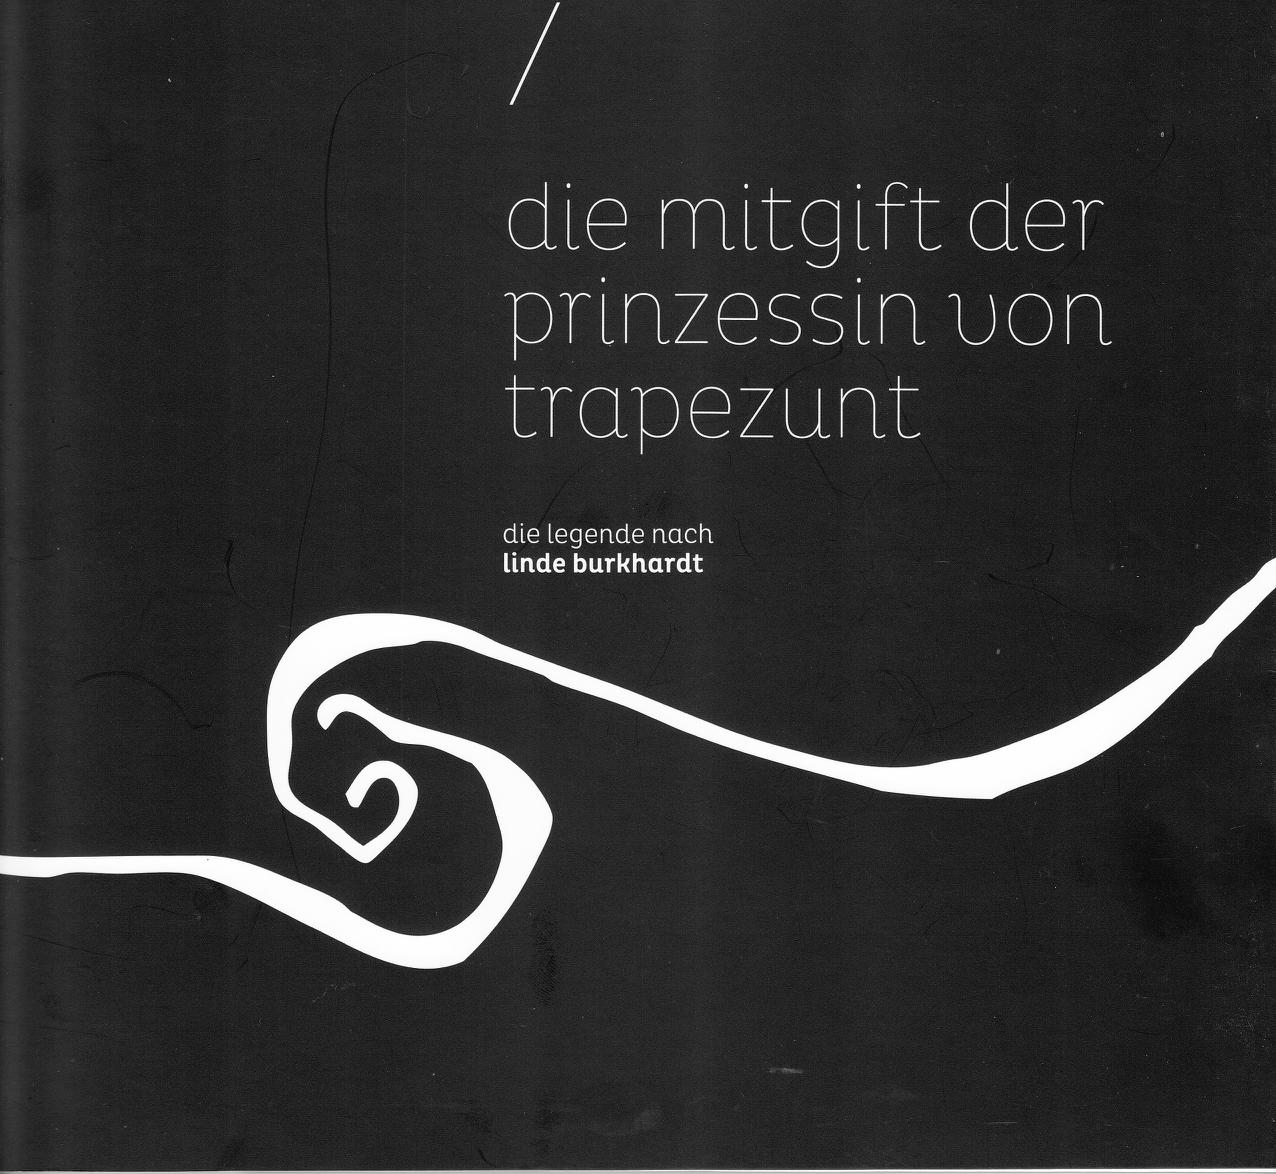 Die Mitgift der Prinzessin von Trapezunt - die Legende nach Linde Burkhardt, Bild: München: Neue Sammlung, 2012..